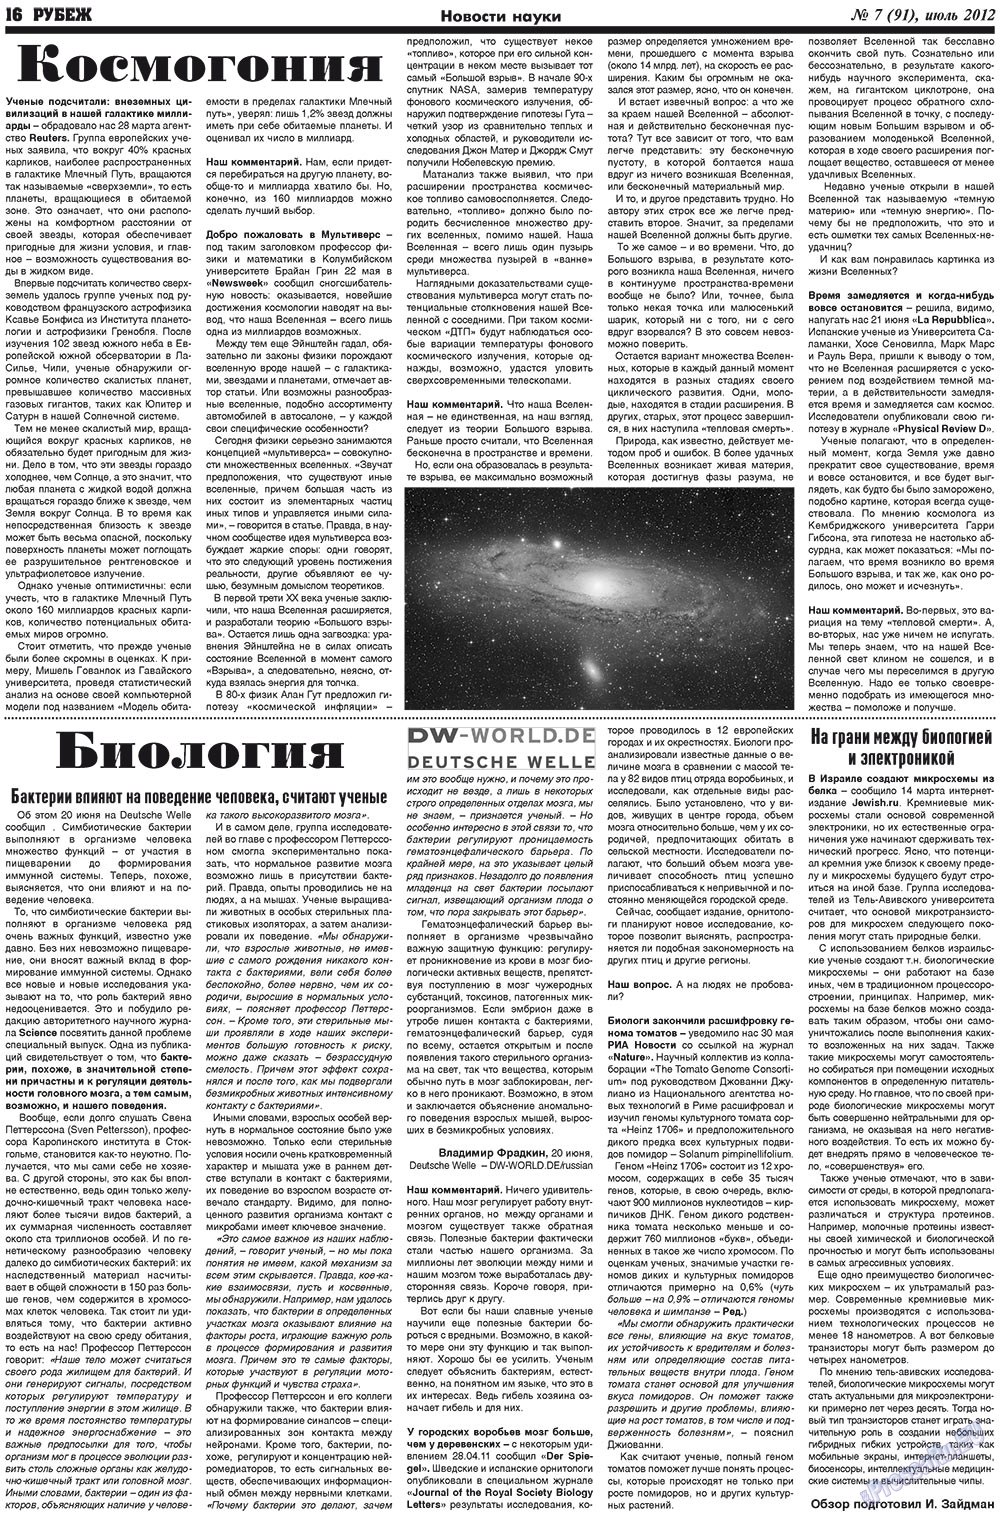 Рубеж (газета). 2012 год, номер 7, стр. 16